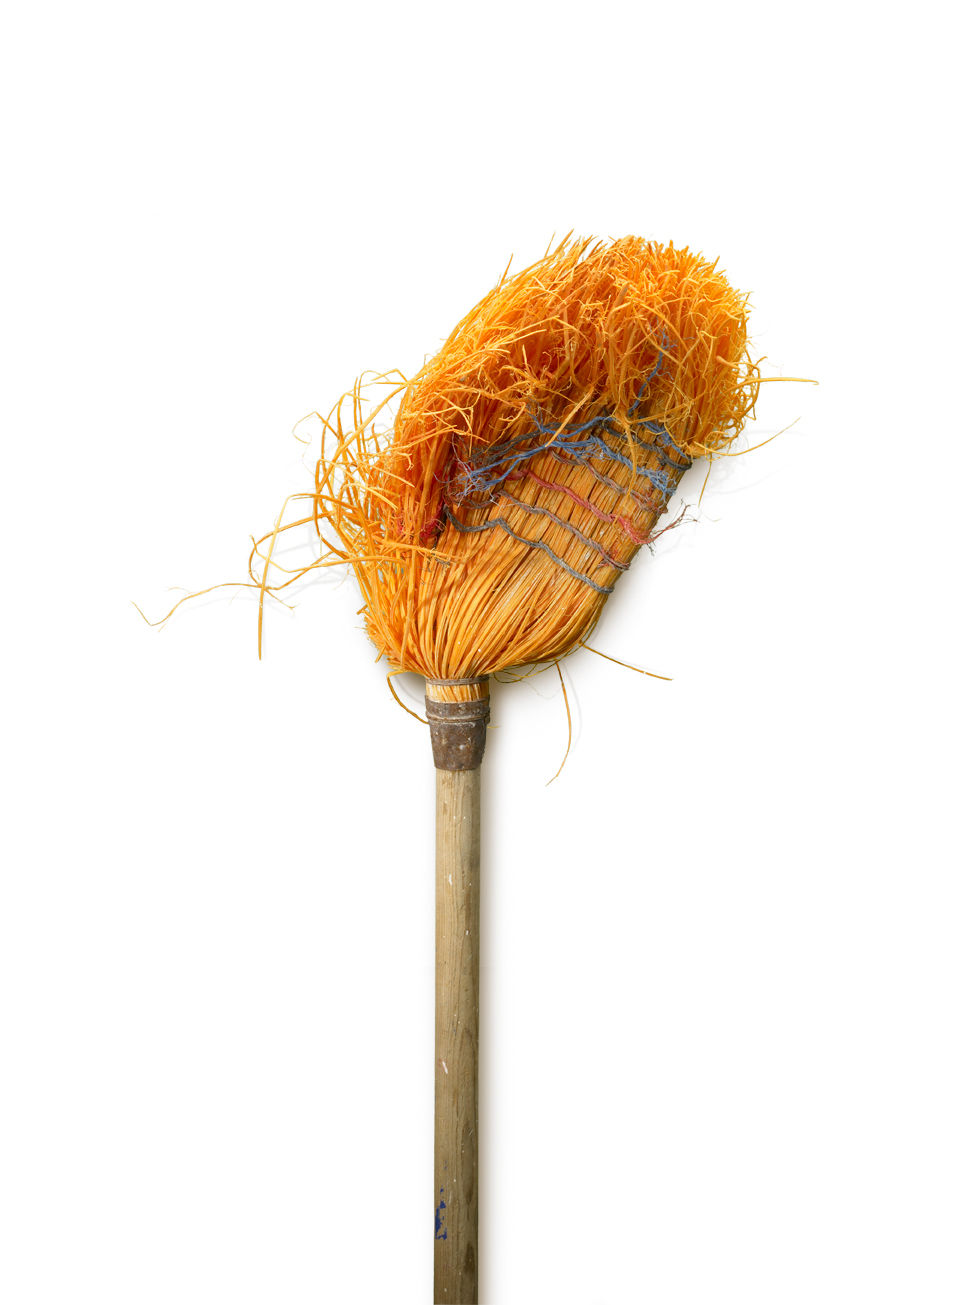 Chuck Ramirez, Orange Half Broom(Broom Series), 2007 / 2011